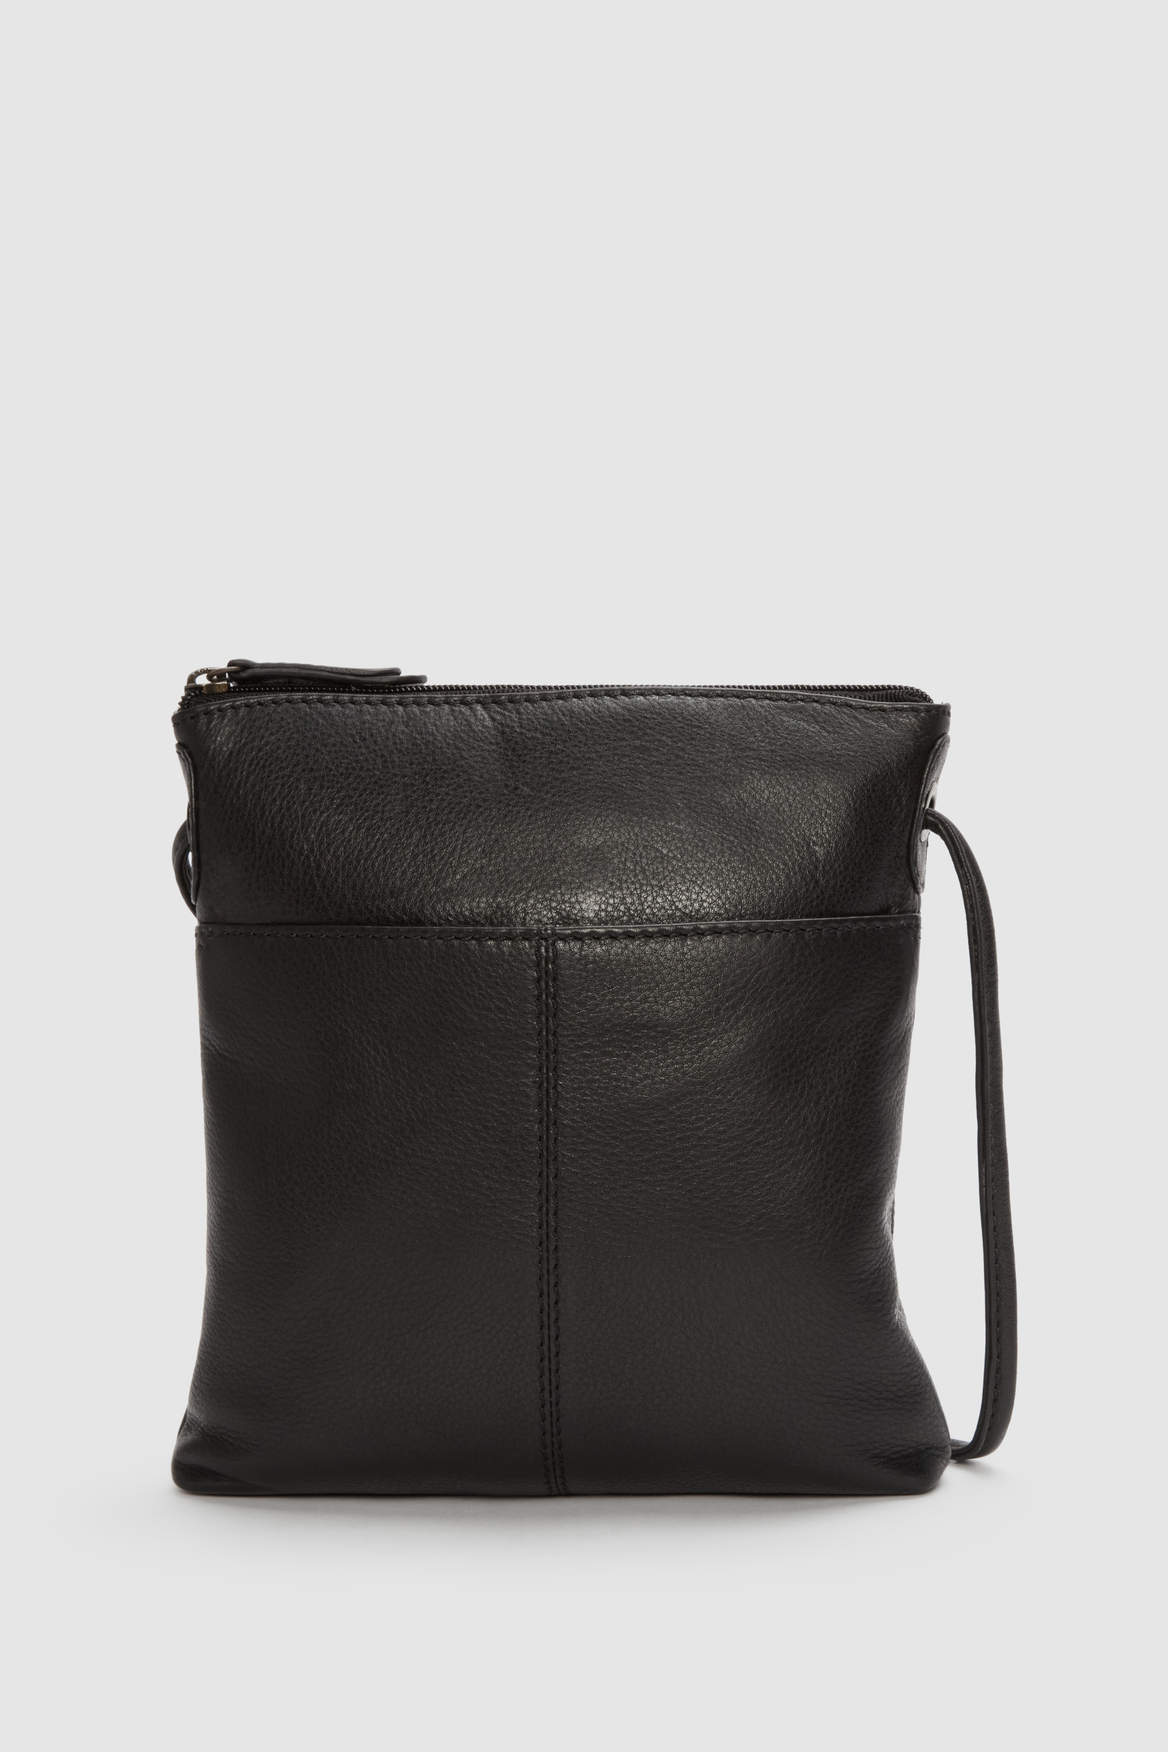 Evity Alba Leather Small Crossbody Bag – Strandbags New Zealand